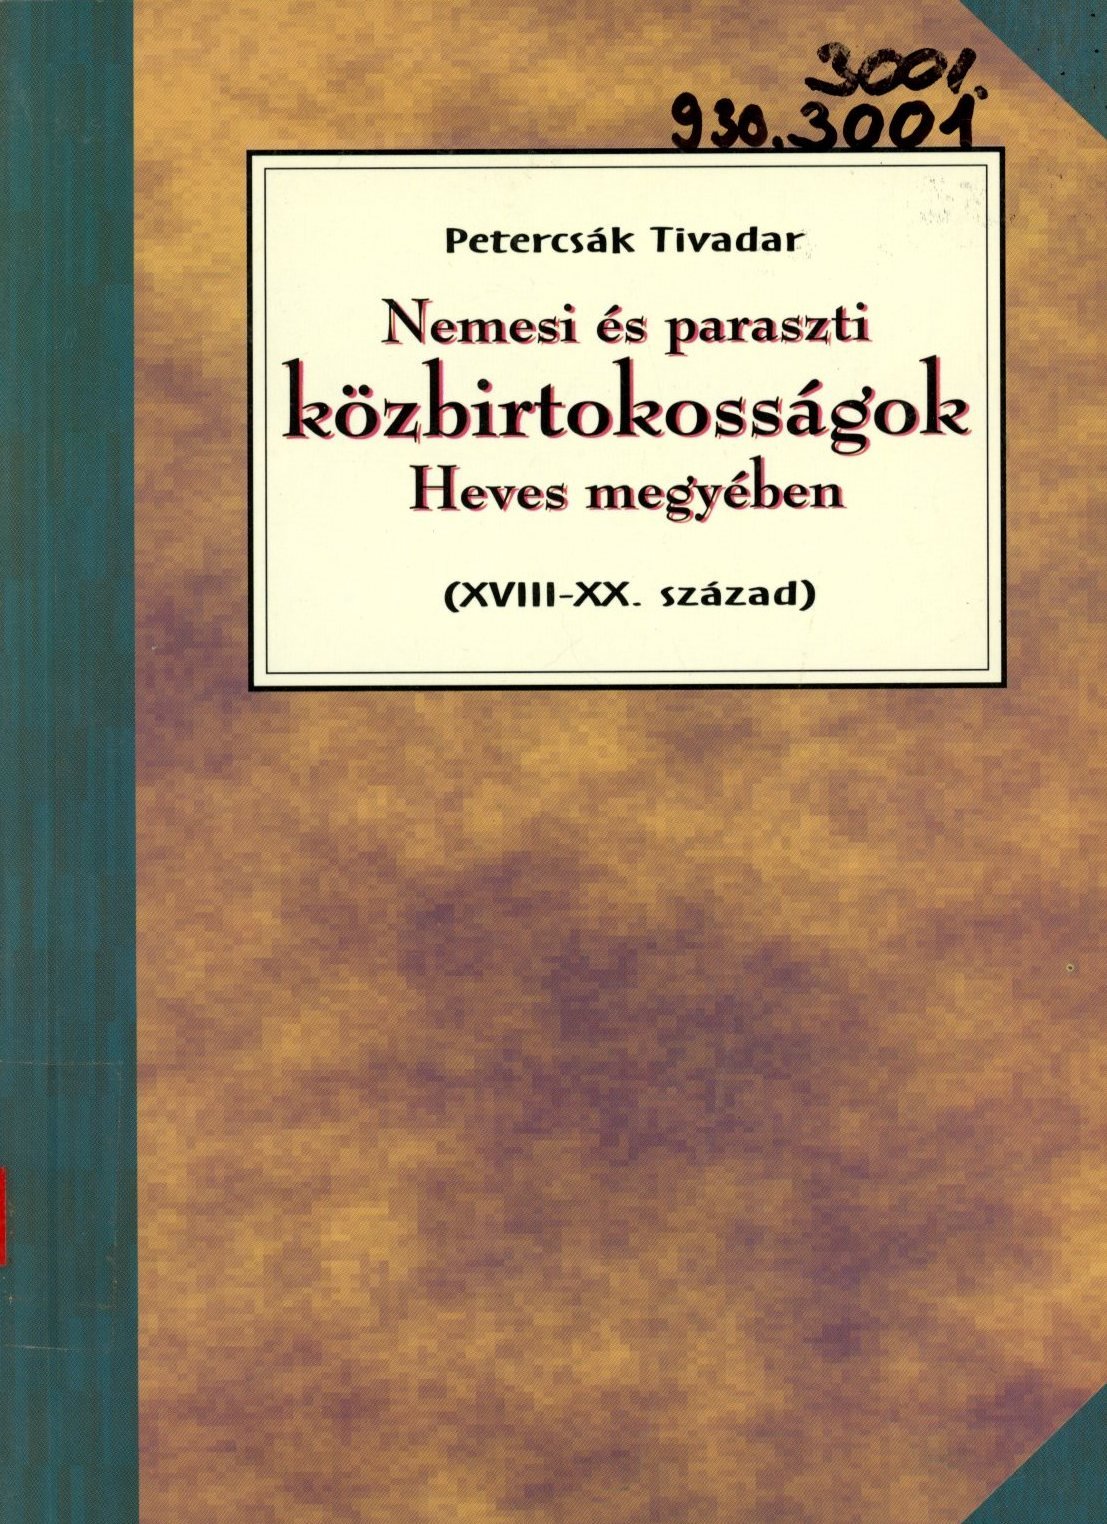 Petercsák Tivadar (Erkel Ferenc Múzeum és Könyvtár, Gyula CC BY-NC-SA)